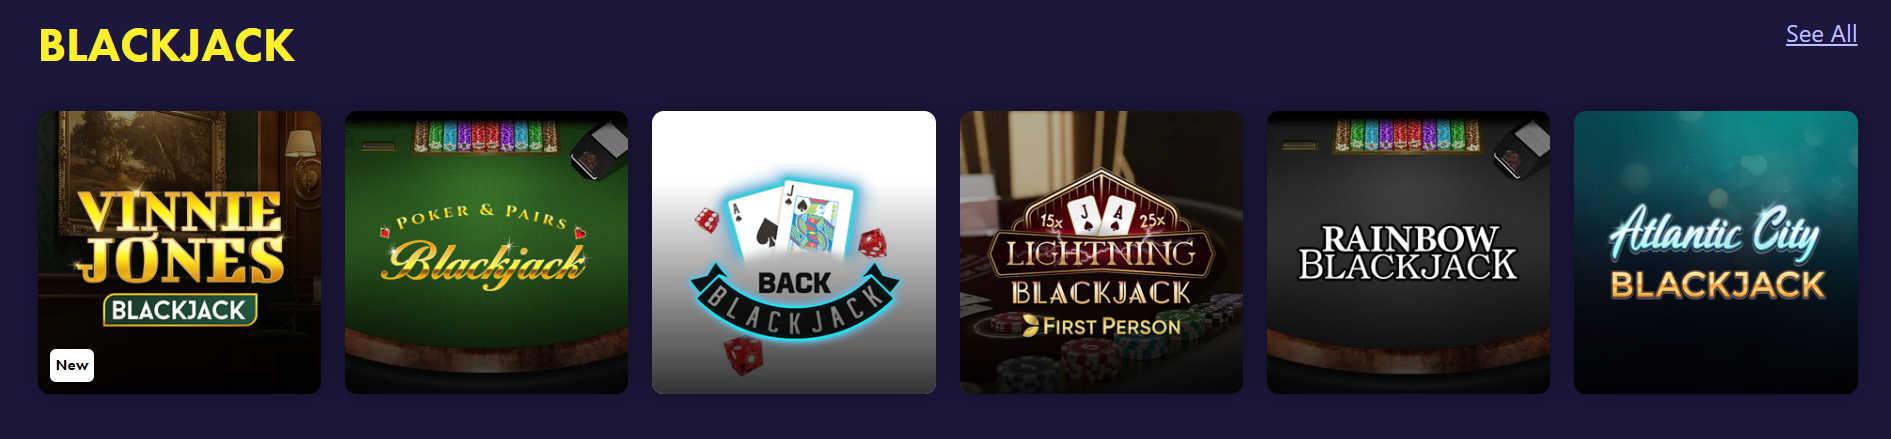  Blackjack at Grosvenor Casino